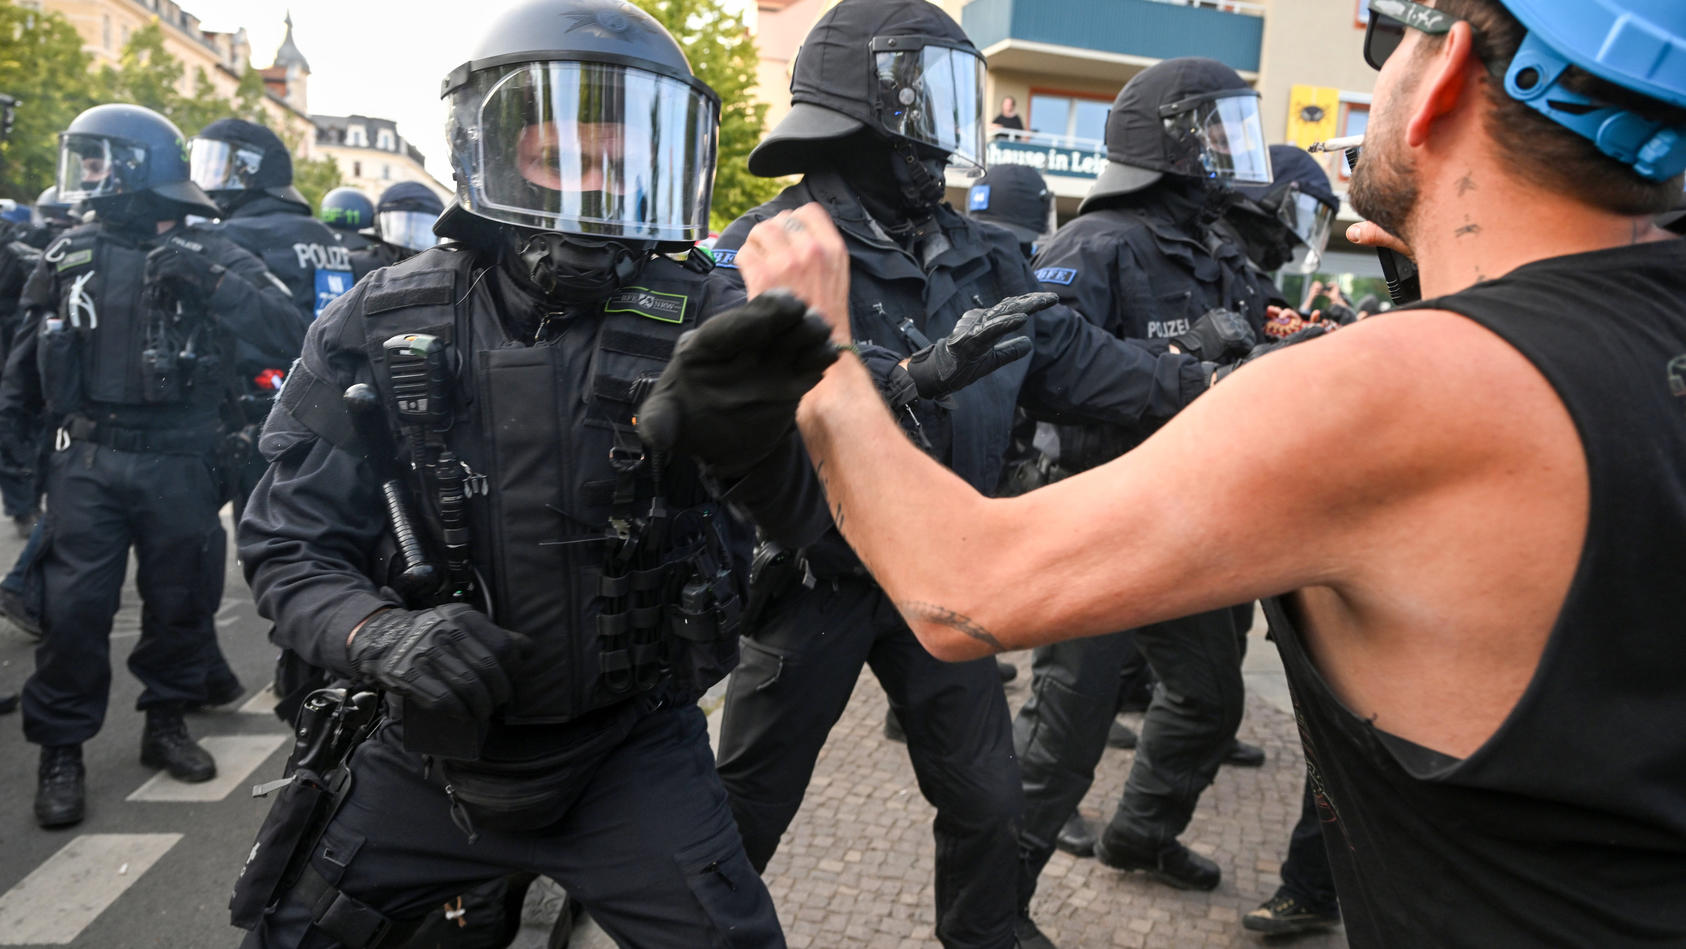 zwischen-polizisten-und-linksradikalen-demonstranten-kam-es-zu-teils-heftigen-auseinandersetzungen